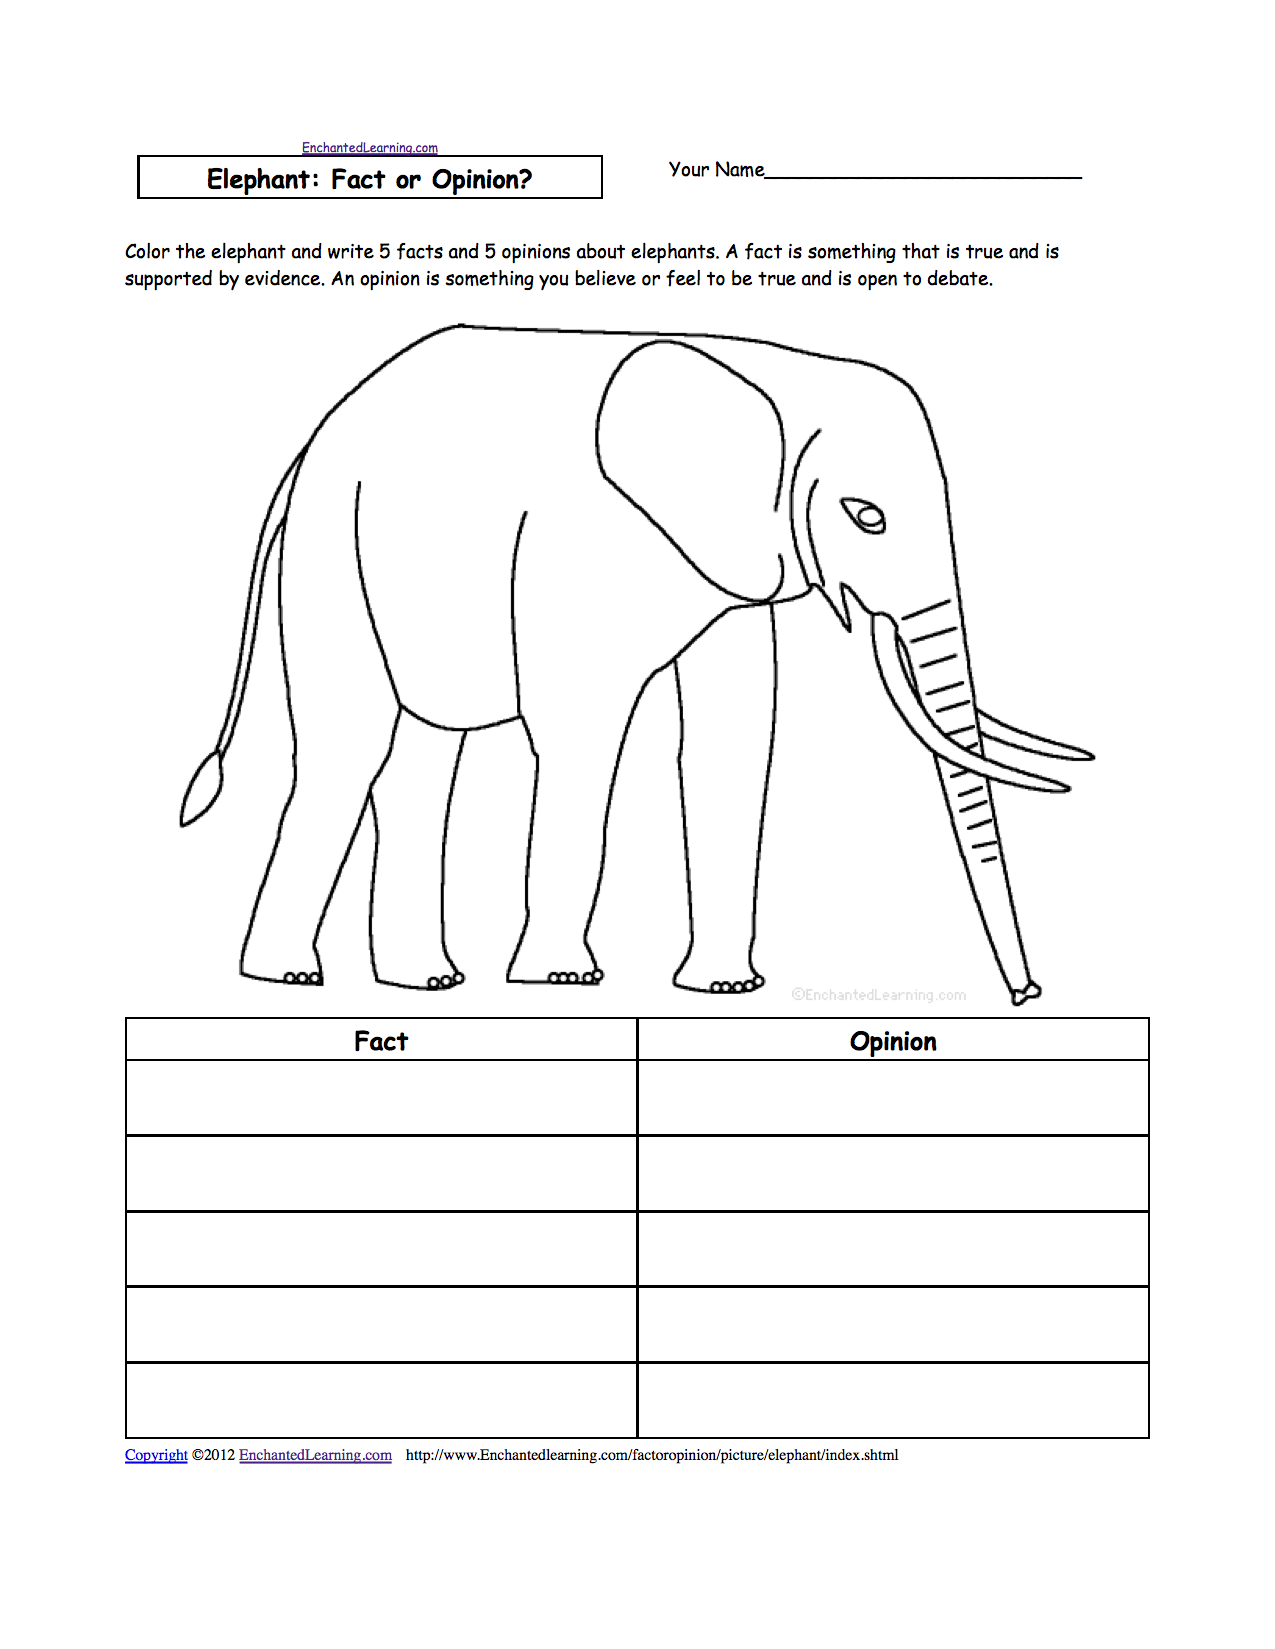 Elephant Life Cycle Worksheet Image